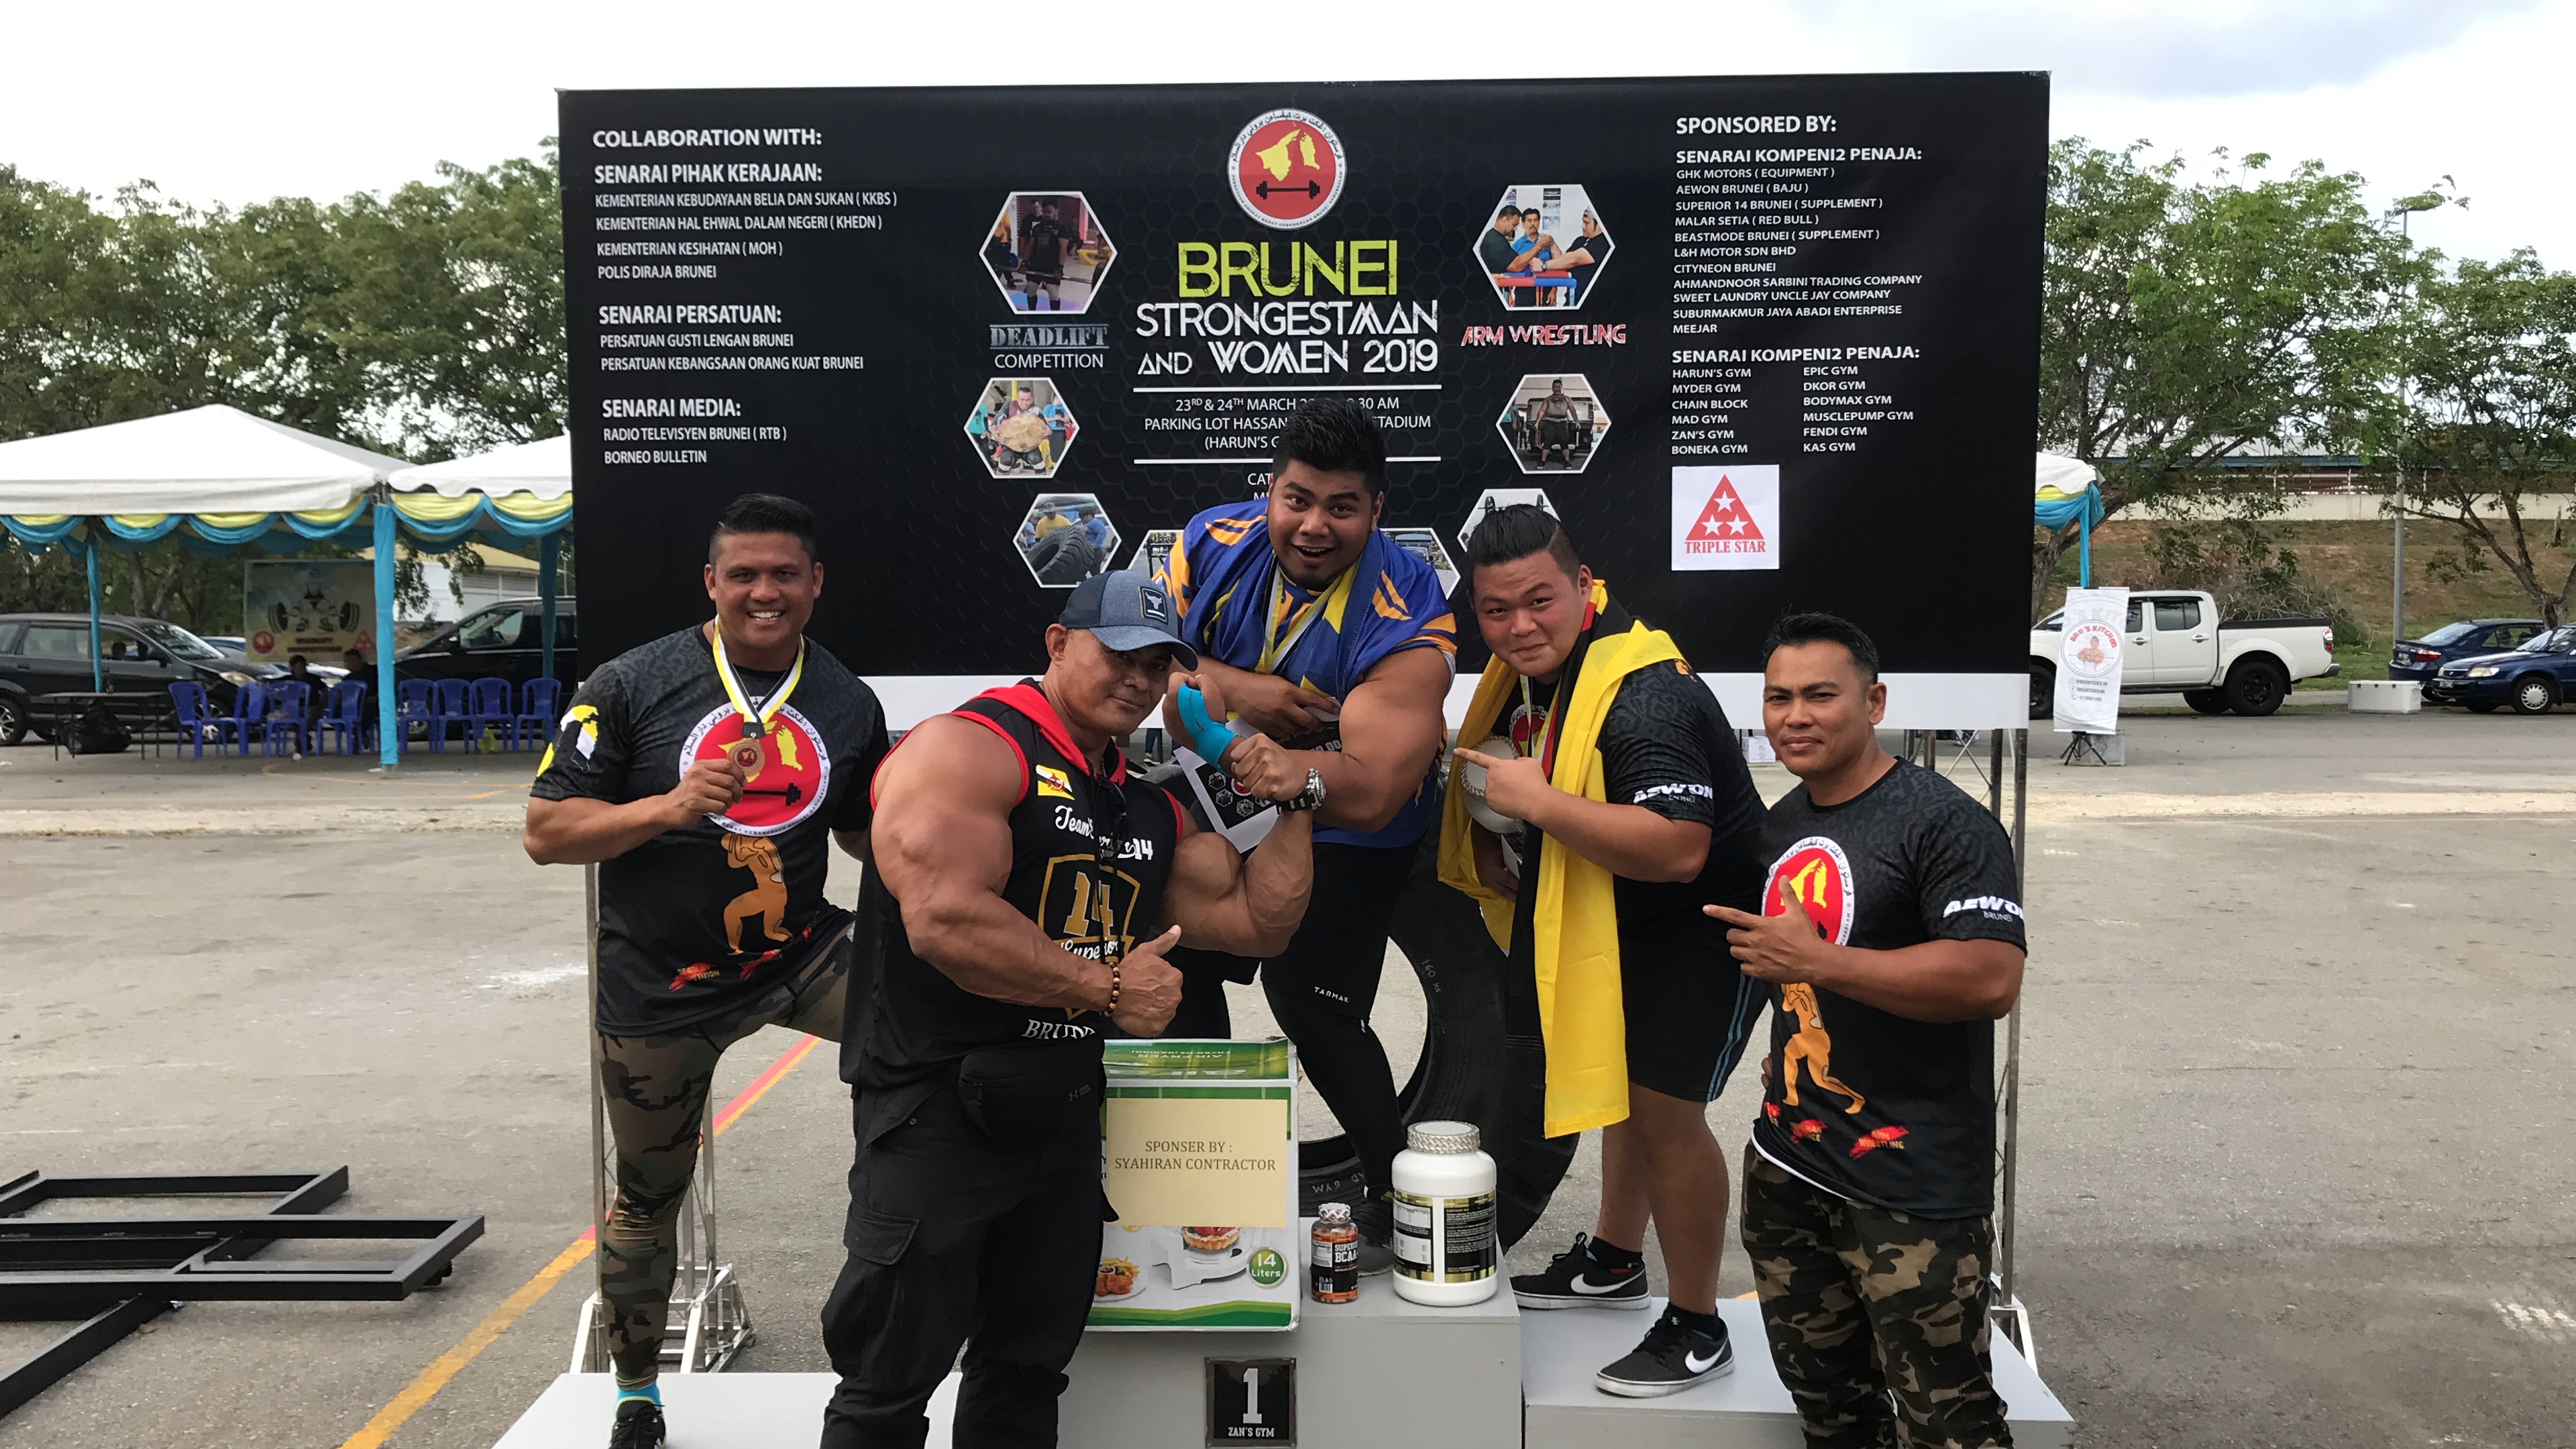 Firdaus ‘Hulk’ Malaysia Johan Brunei Strongest Man and Women 2019